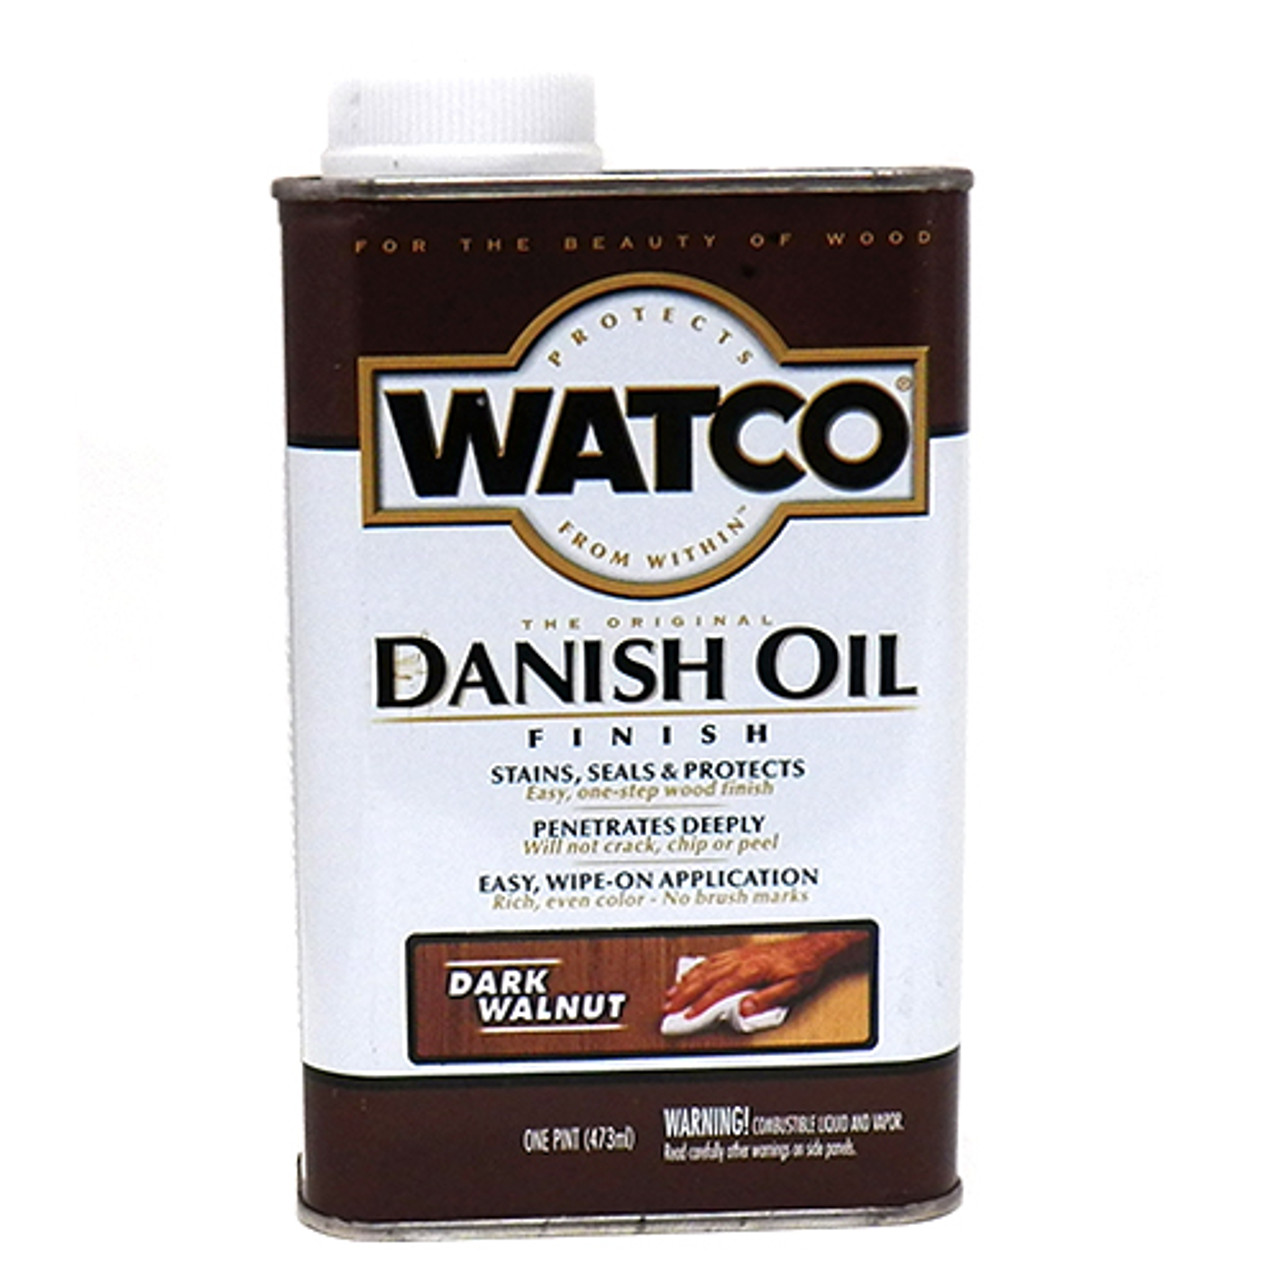 Watco Danish Oil, Dark Walnut, Pint